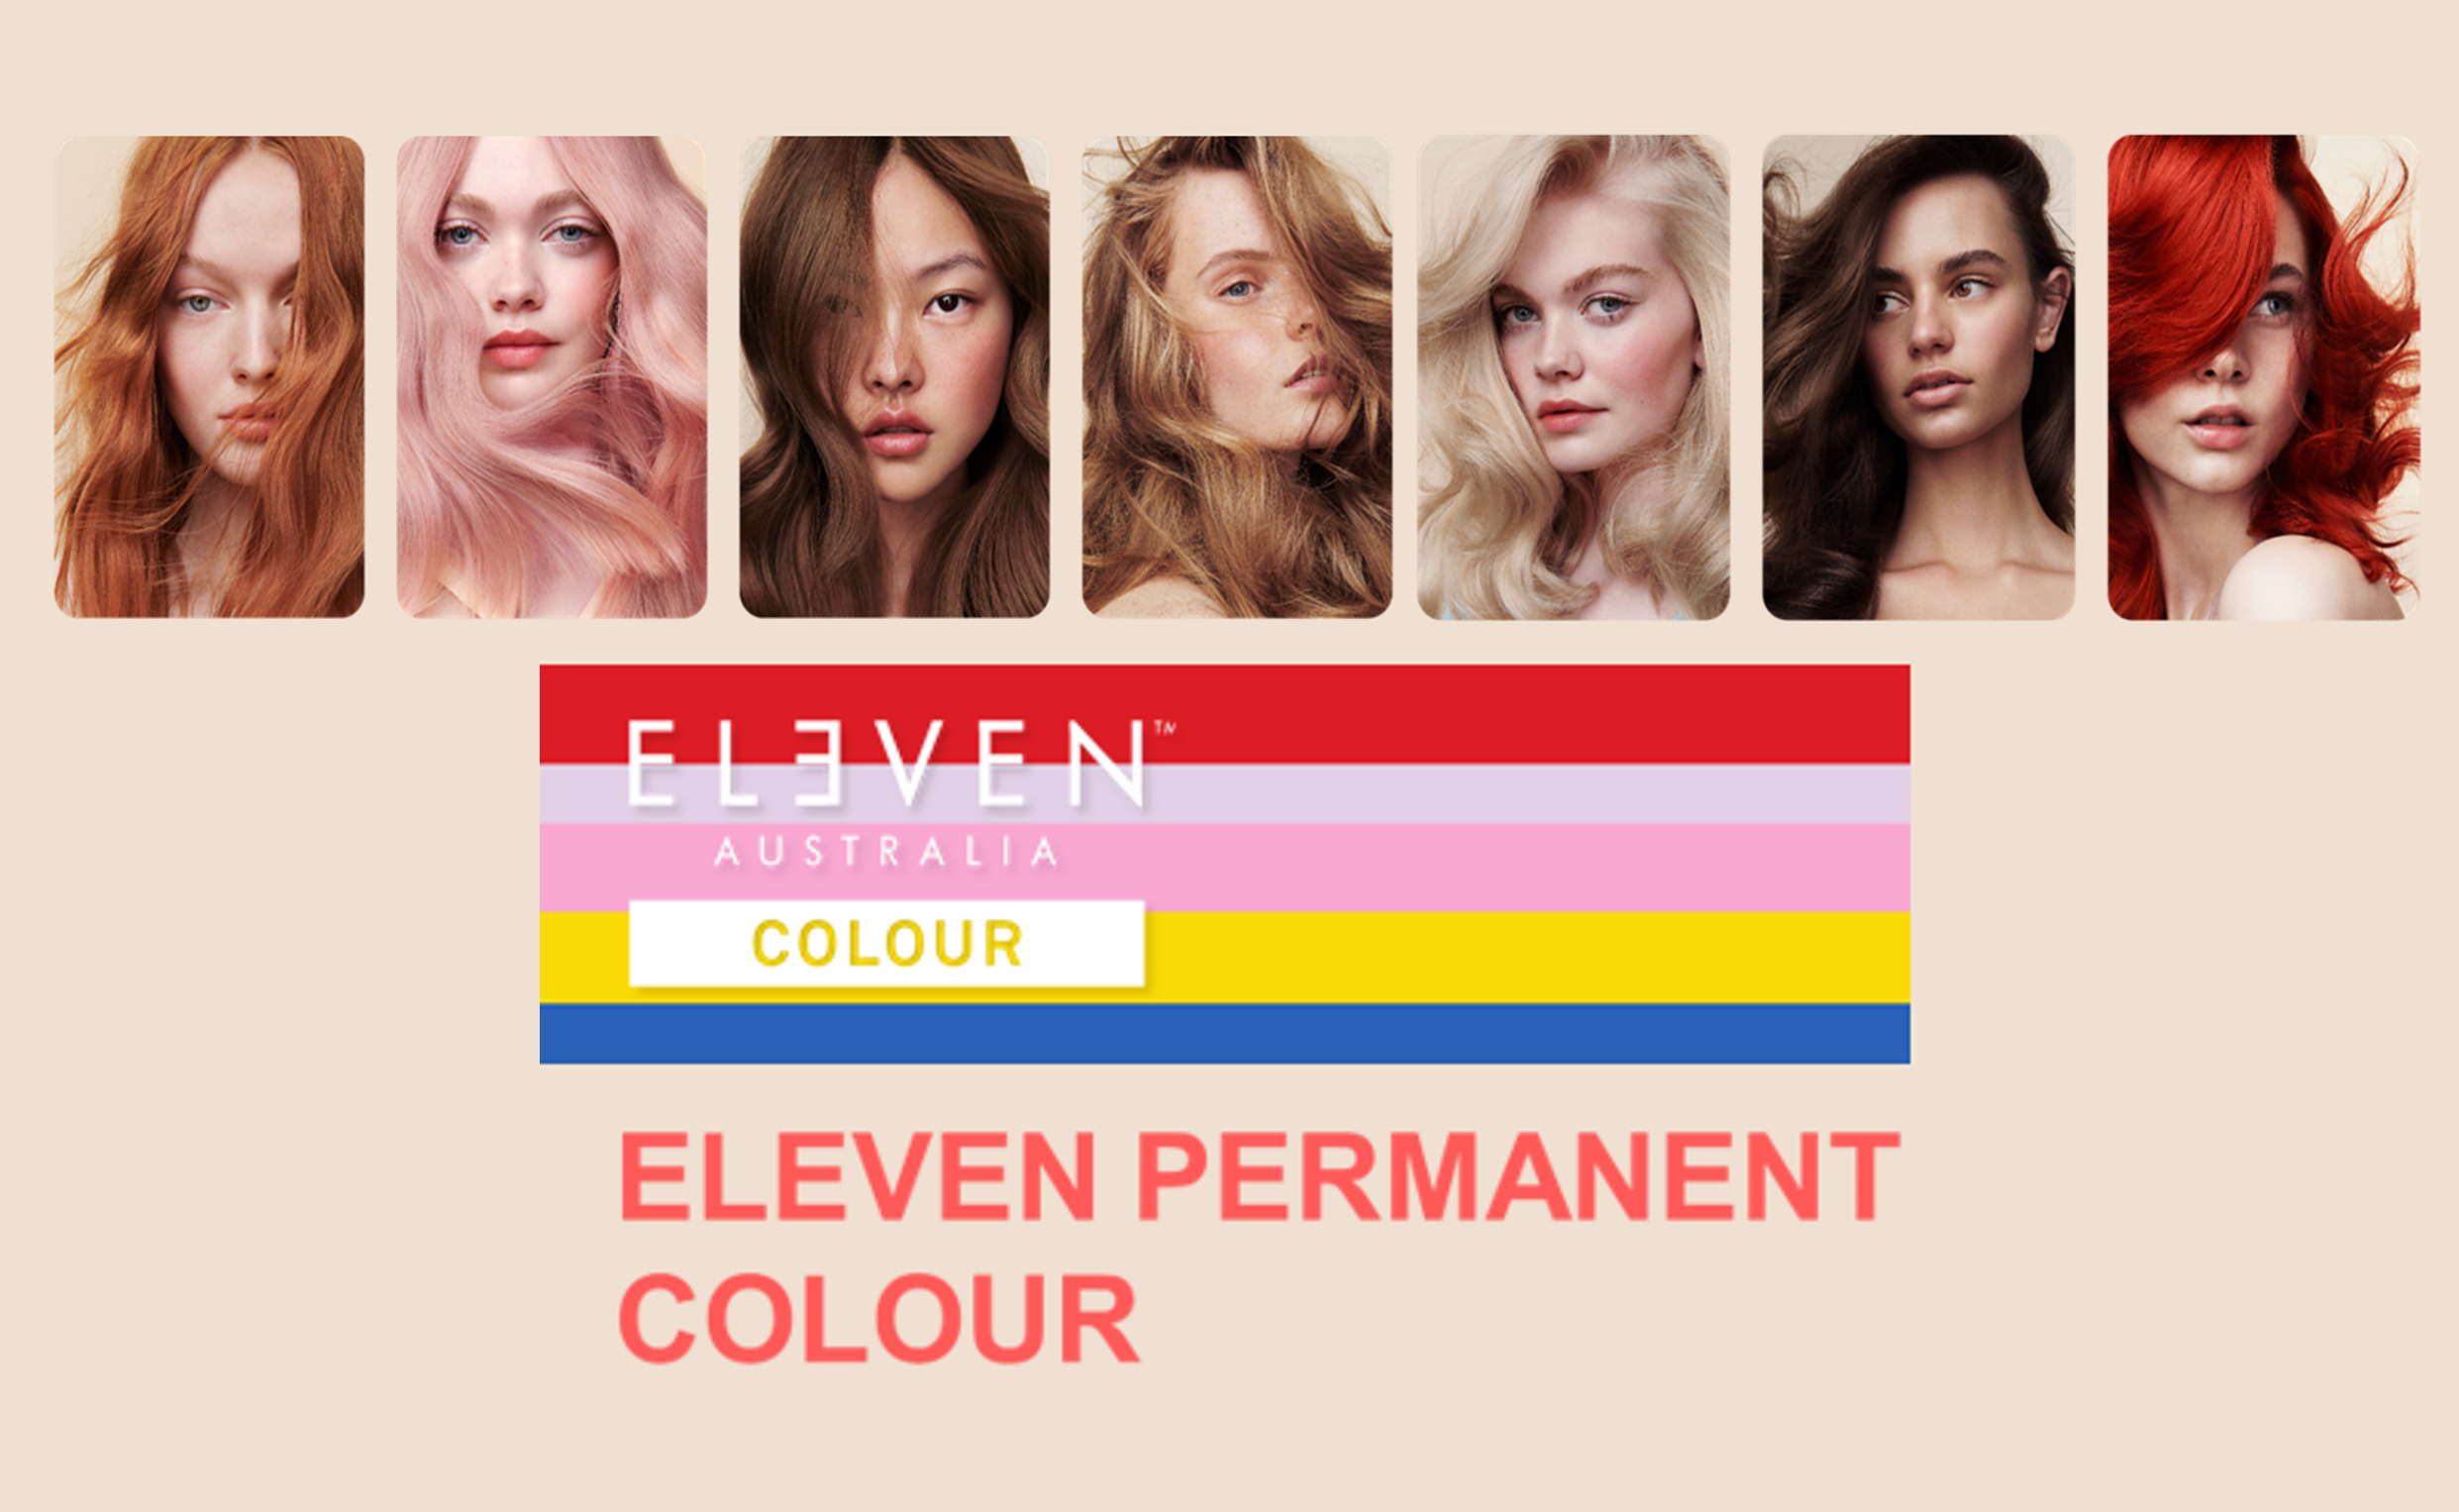 ELEVEN Australia Permanent COLOUR launch - Wonderful Brands